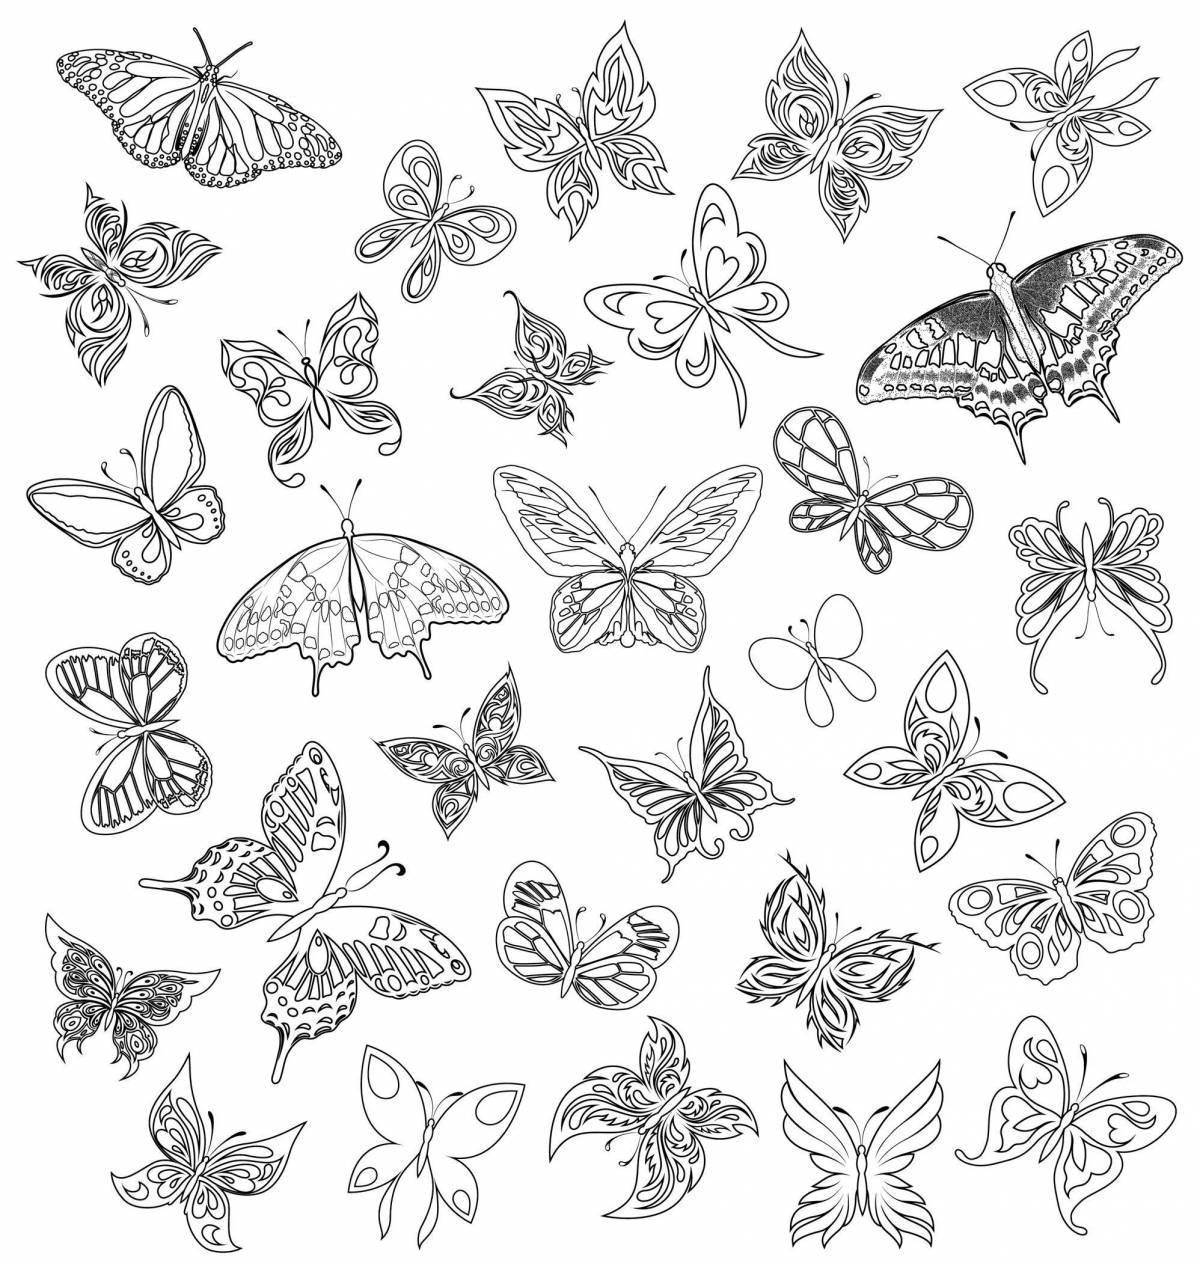 Joyful many butterflies on one sheet